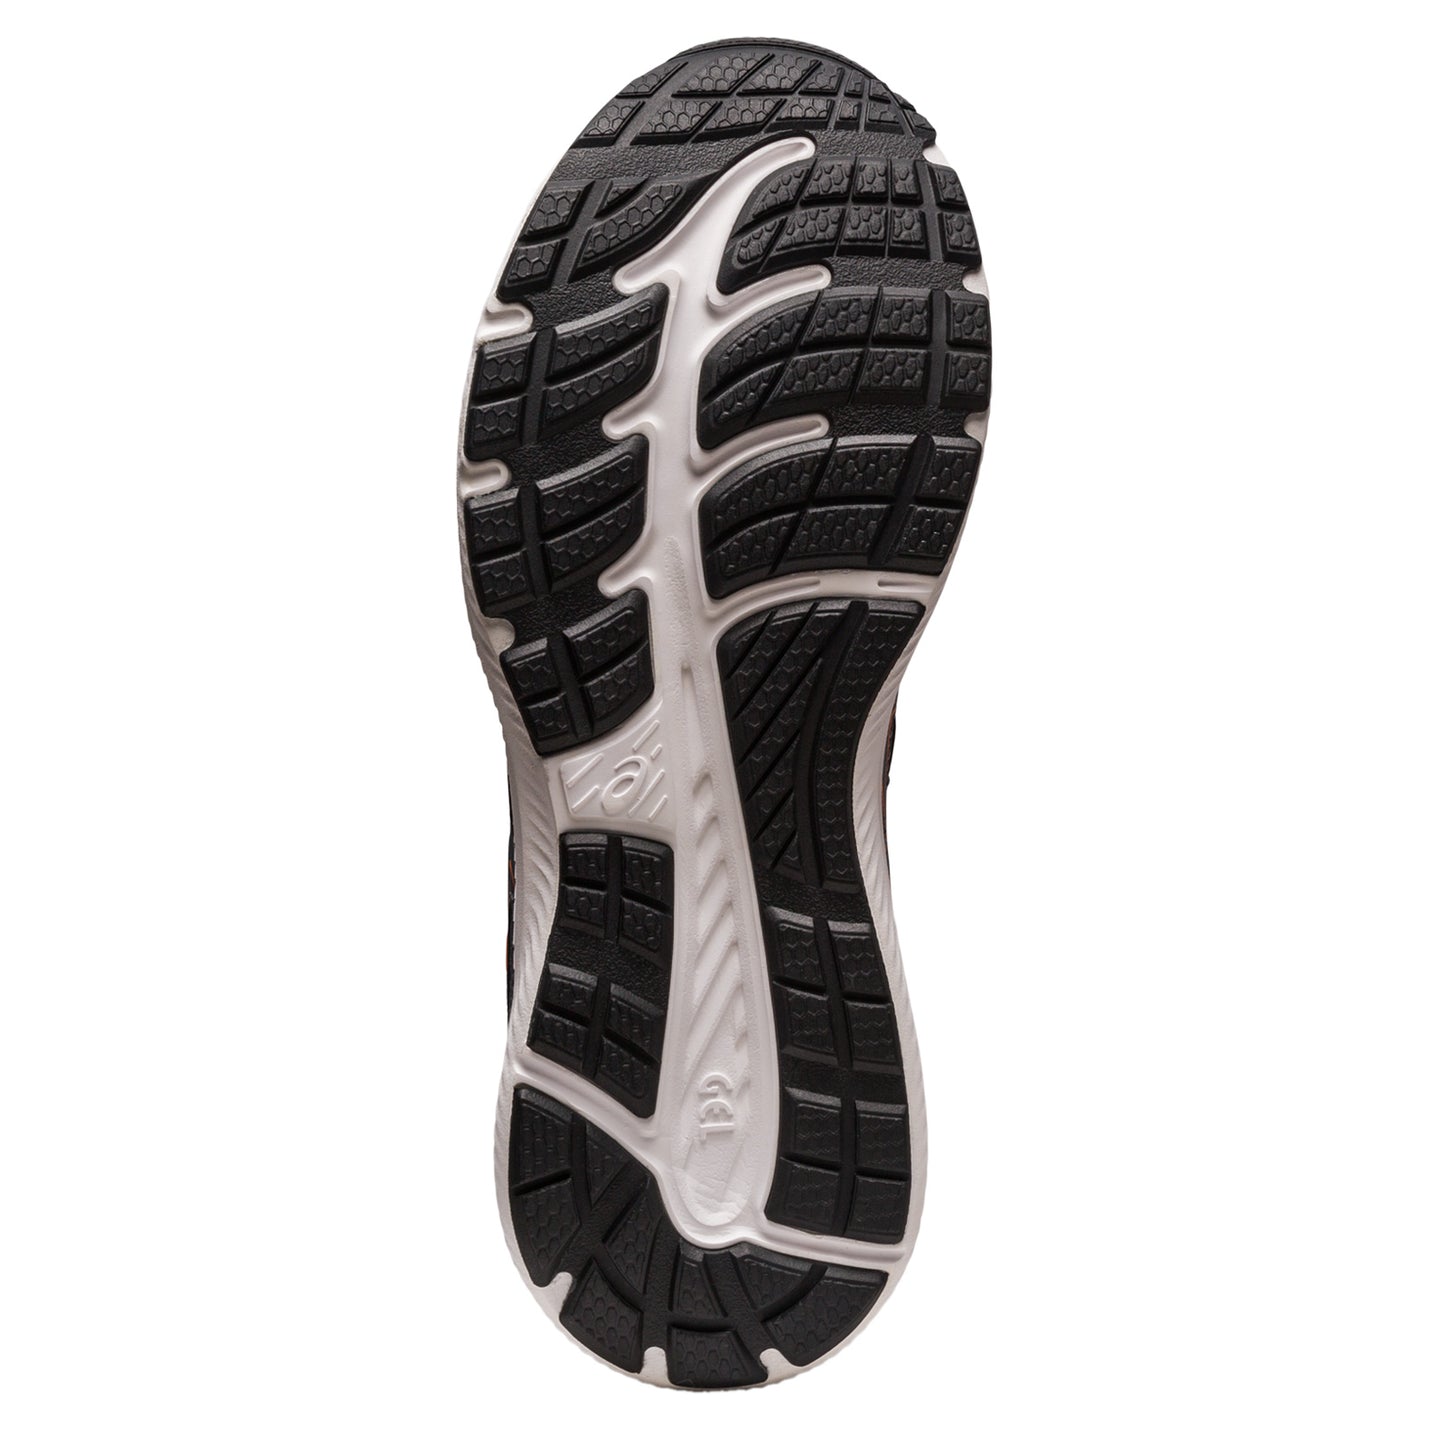 Peltz Shoes  Men's ASICS GEL-Contend 8 Running Shoe CARRIER GREY/METROPOLIS 1011B492-024